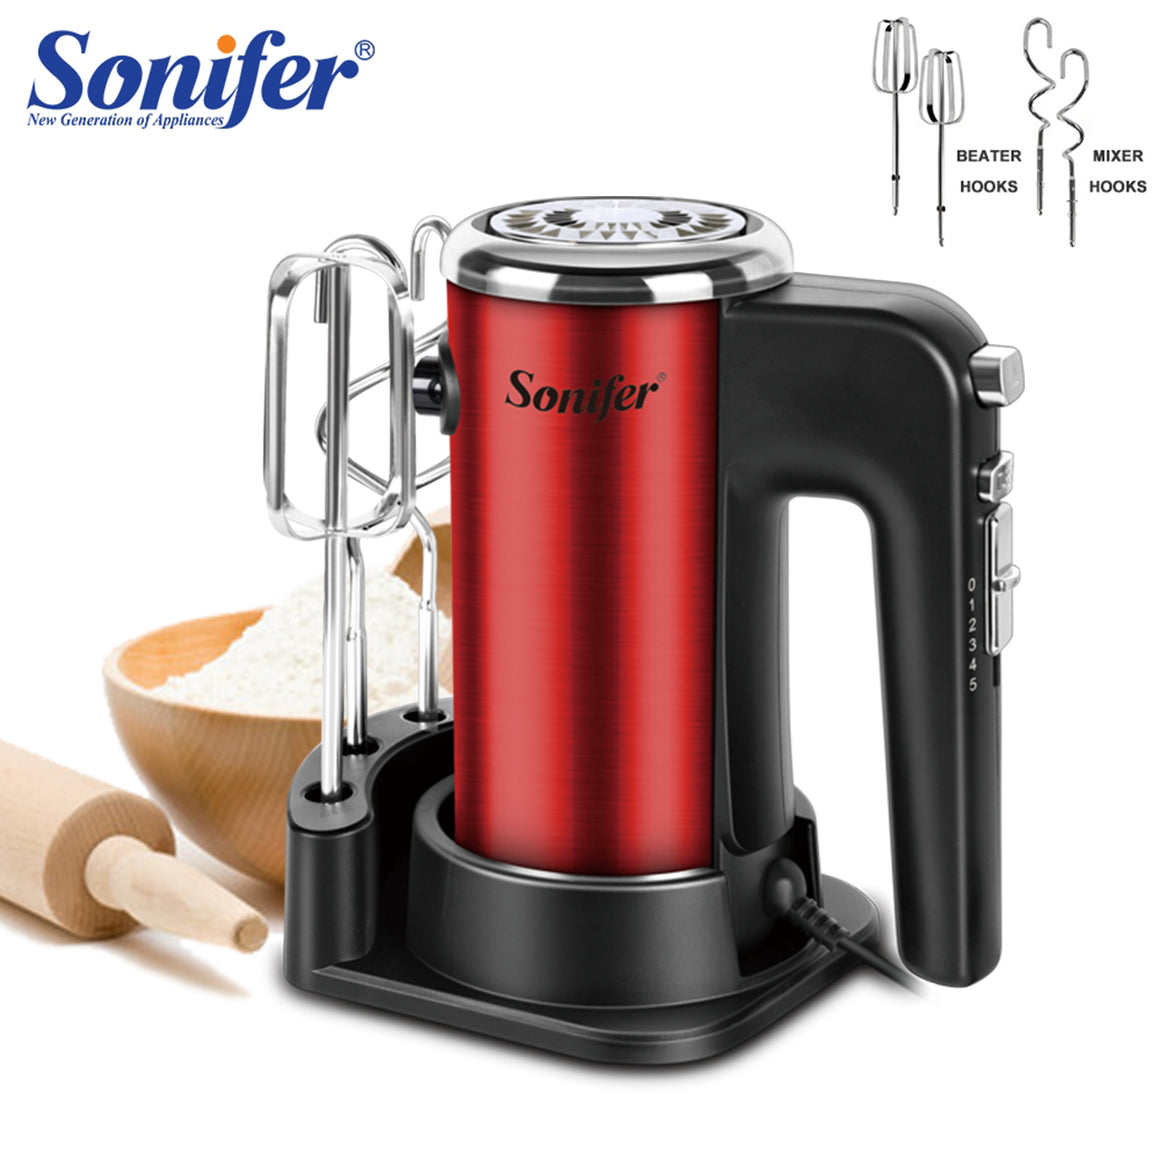 Sonifer 2 in 1 Hand Mixer 400W